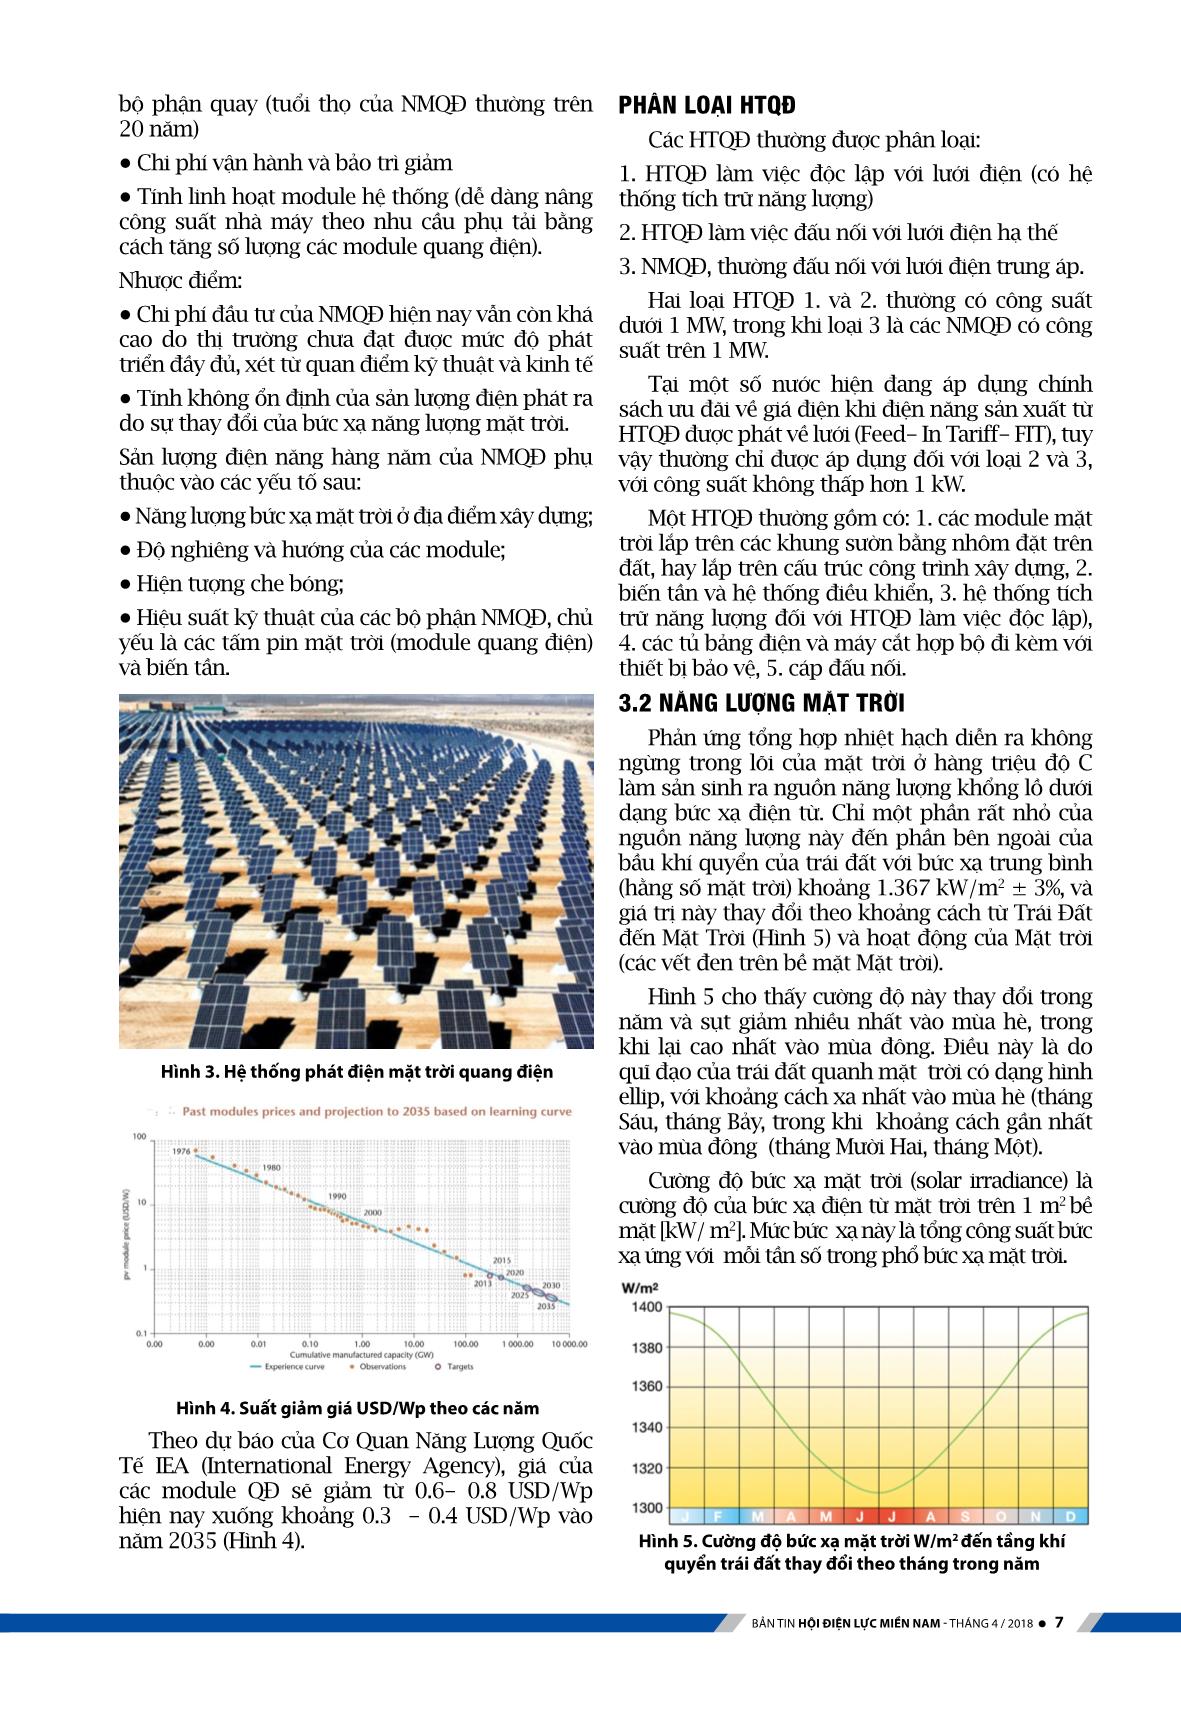 Kỹ thuật hệ thống điện mặt trời với công nghệ quang điện (Phần 1) trang 3